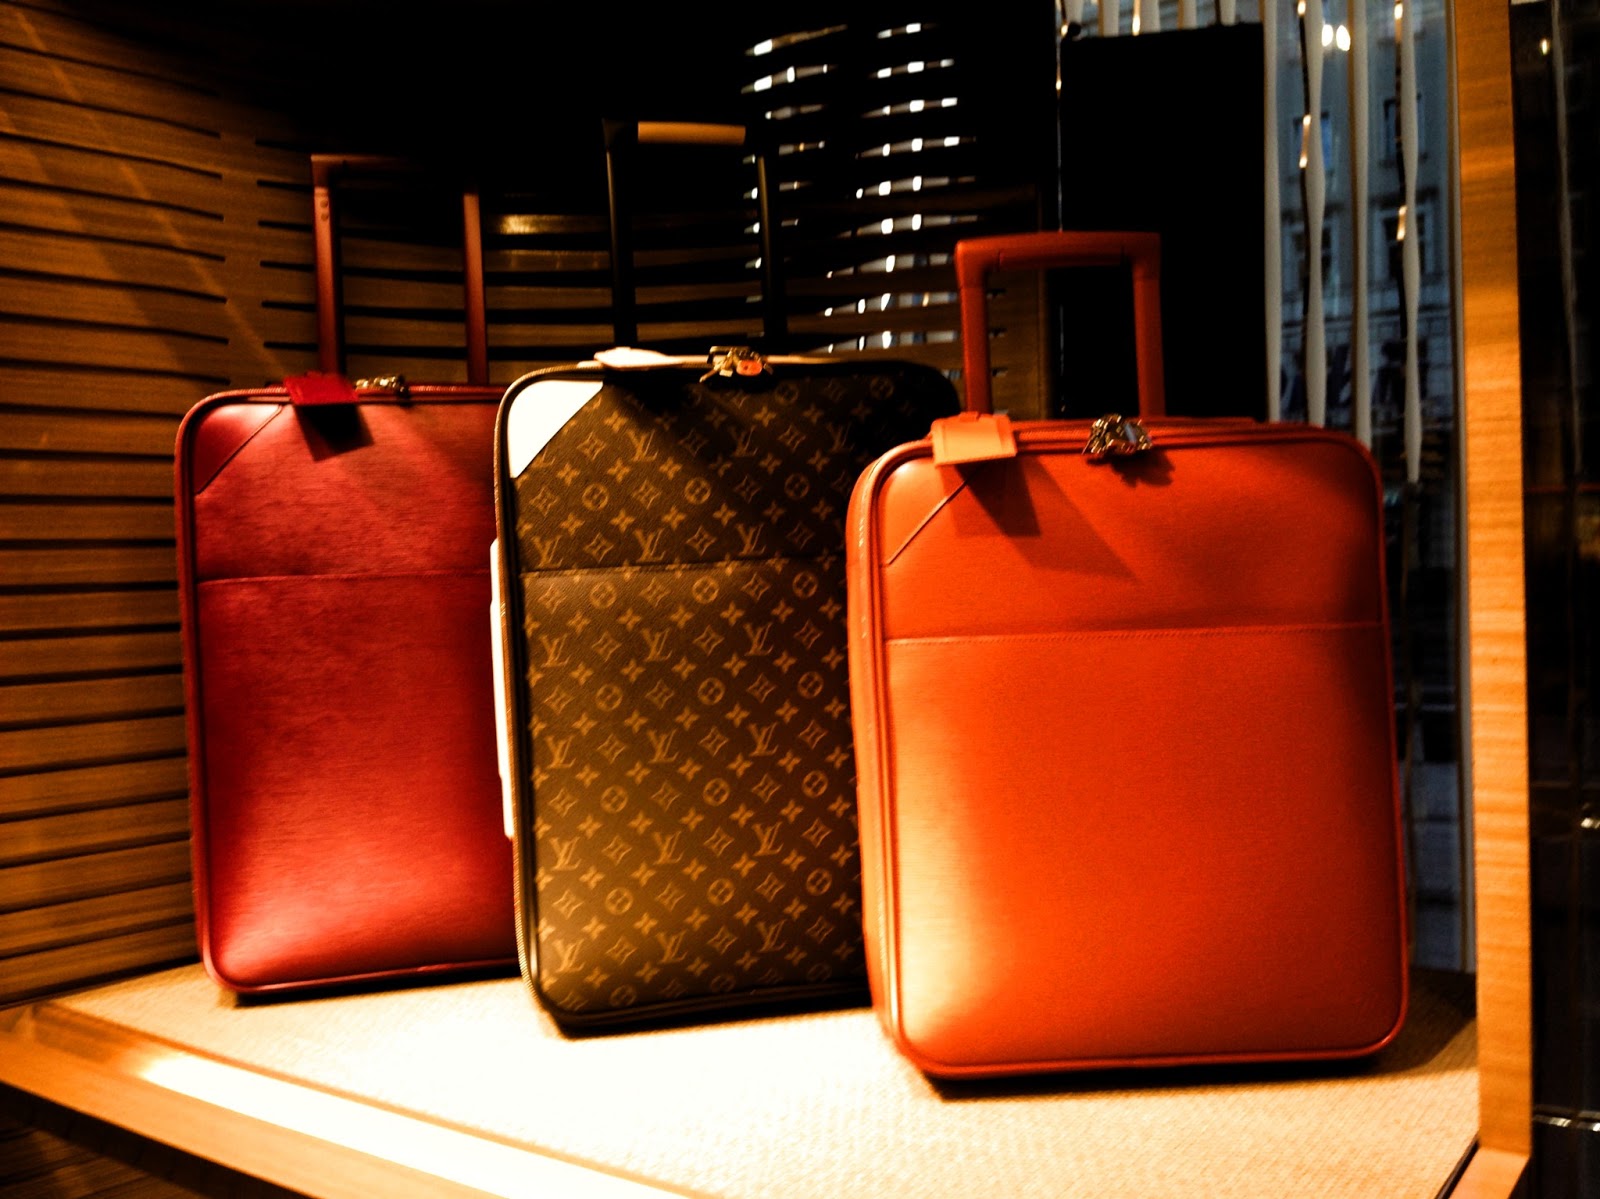 Louis Vuitton - big bag - before opening - Warsaw, Poland